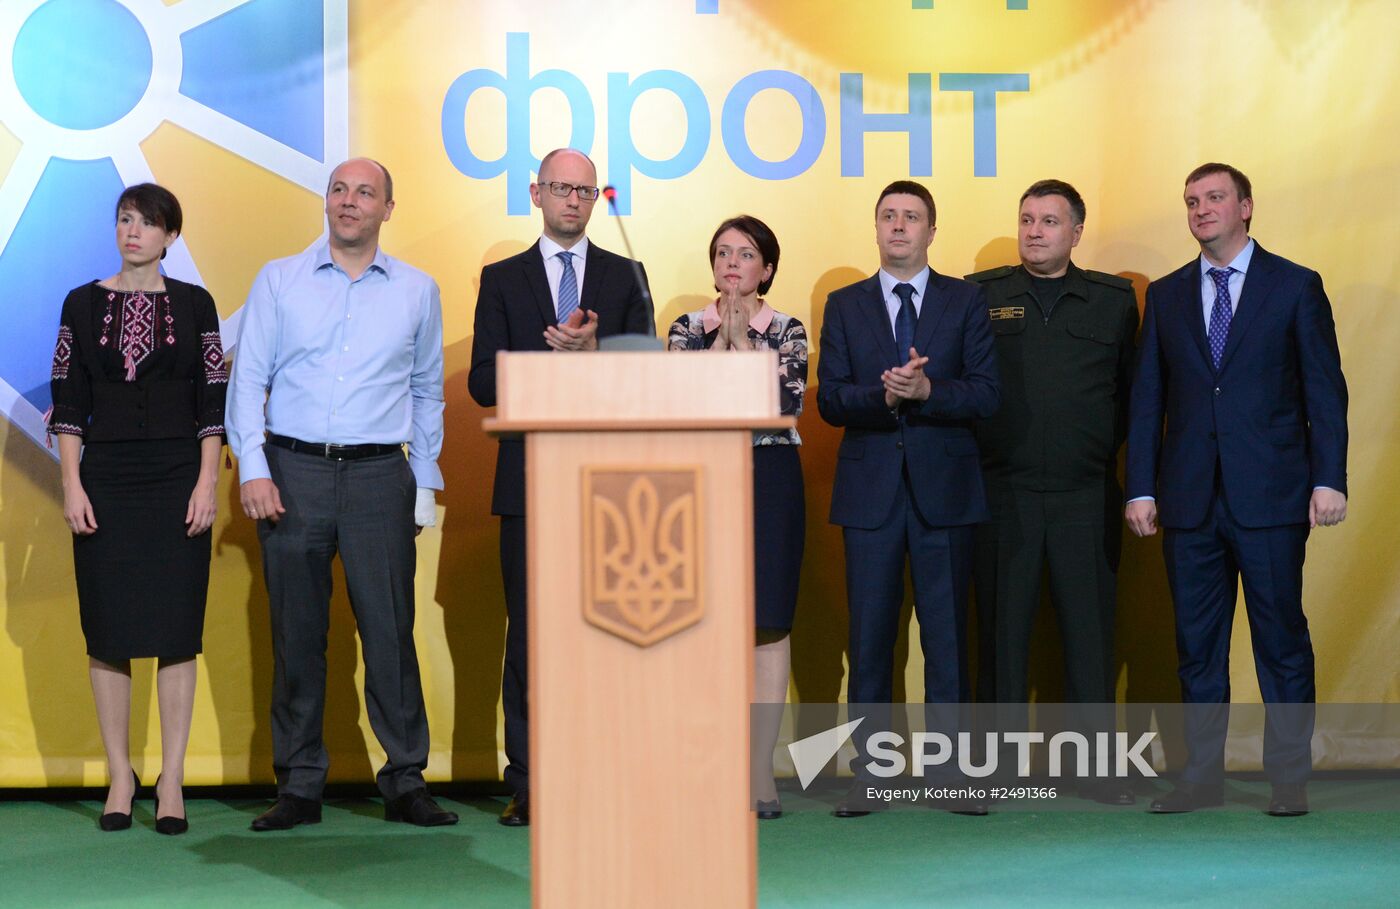 Arseniy Yatsenyuk and Oleksandr Turchynov elected heads of Popular Front party